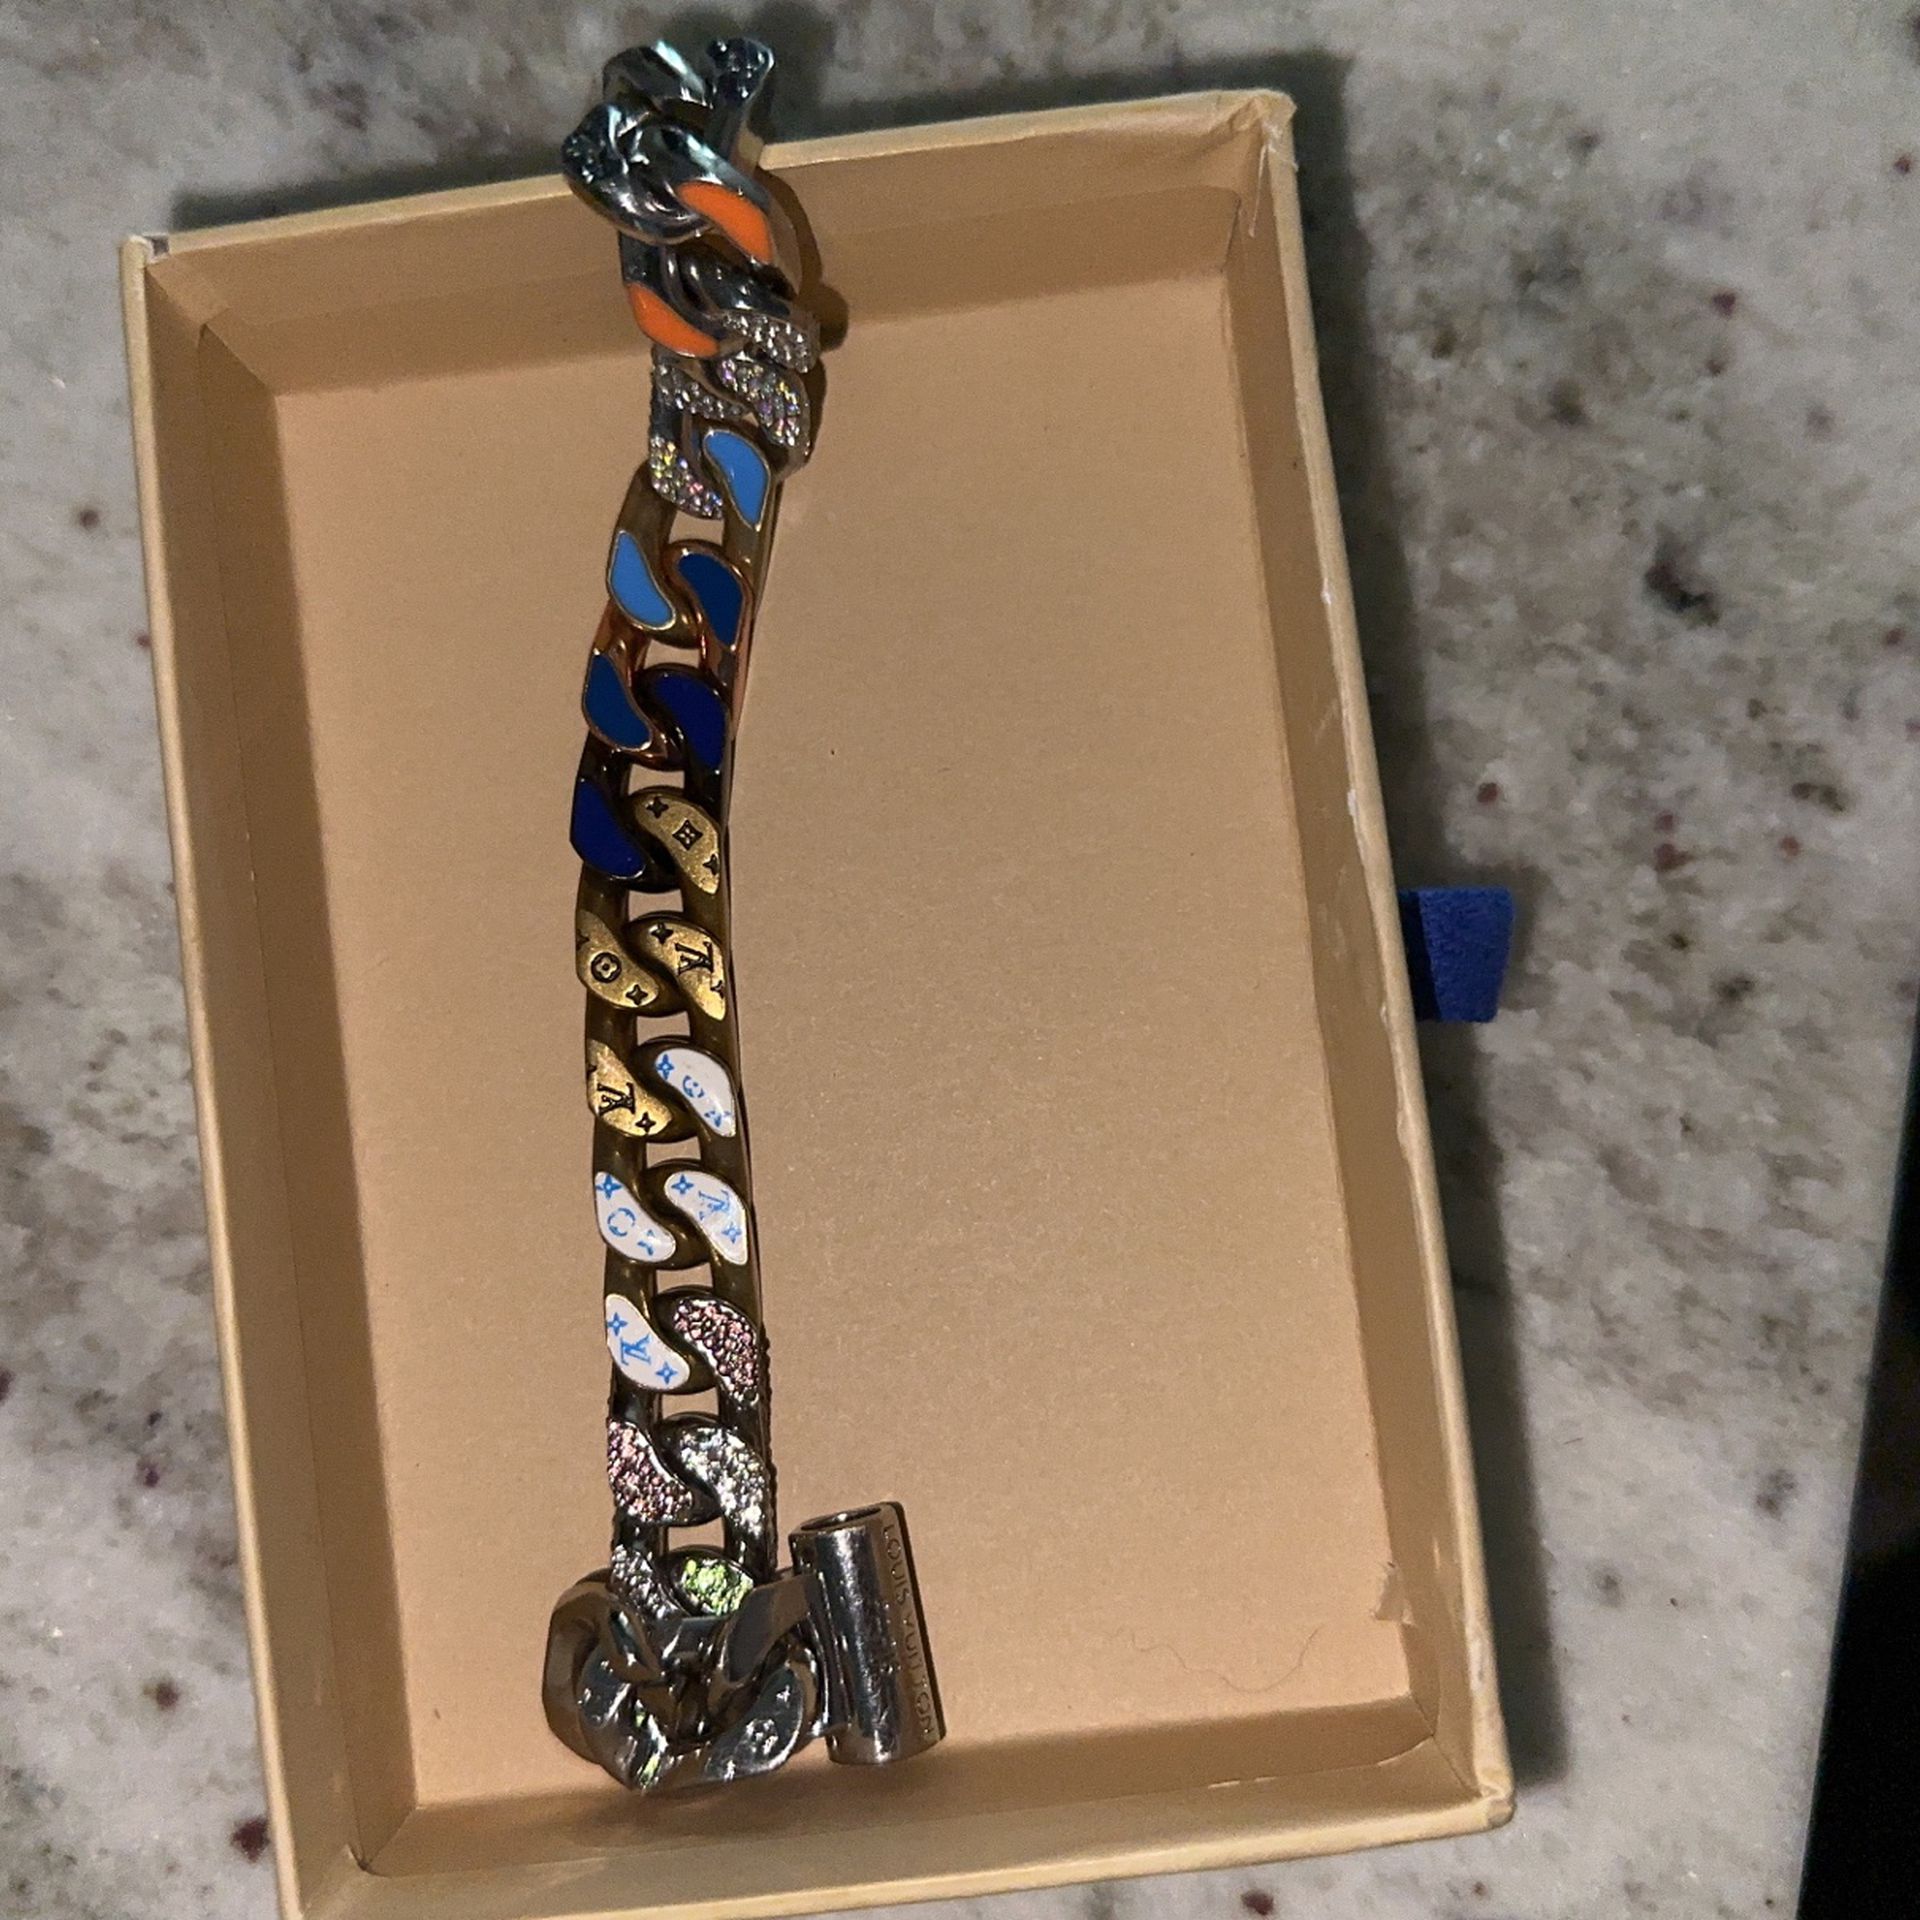 Louis Vuitton Chain Links Patches Bracelet